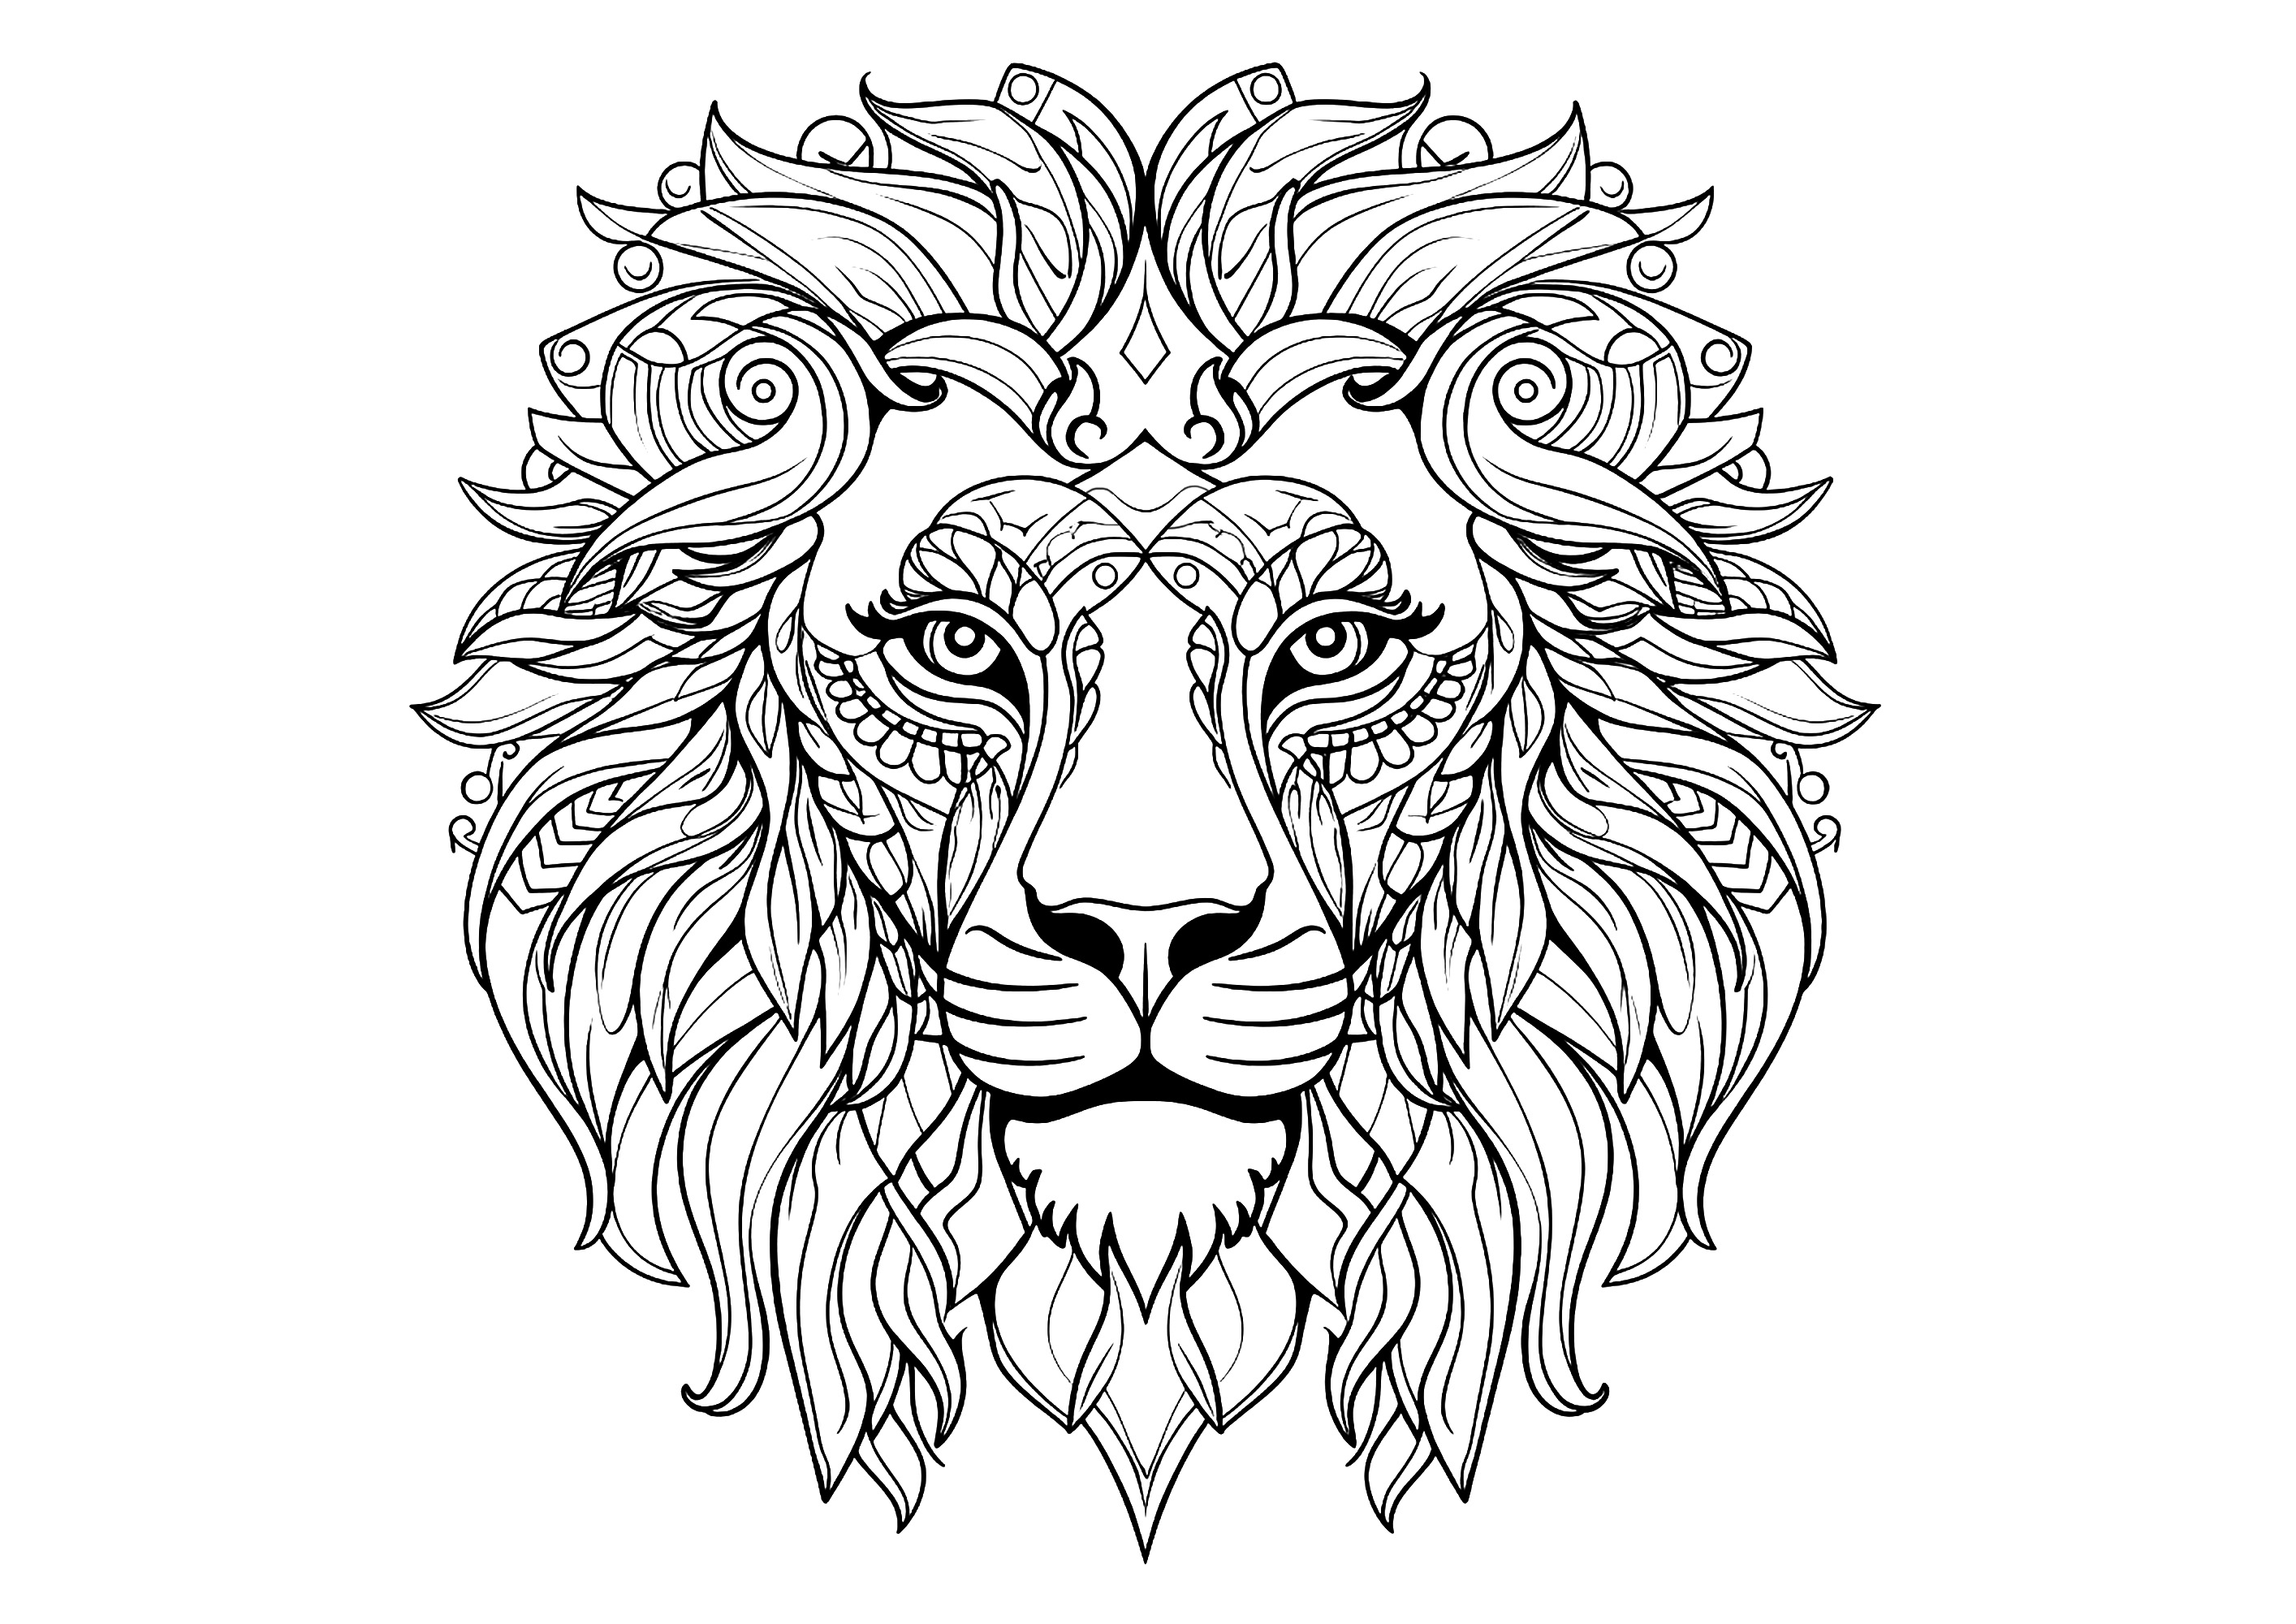 Tête de lion et beaux motifs